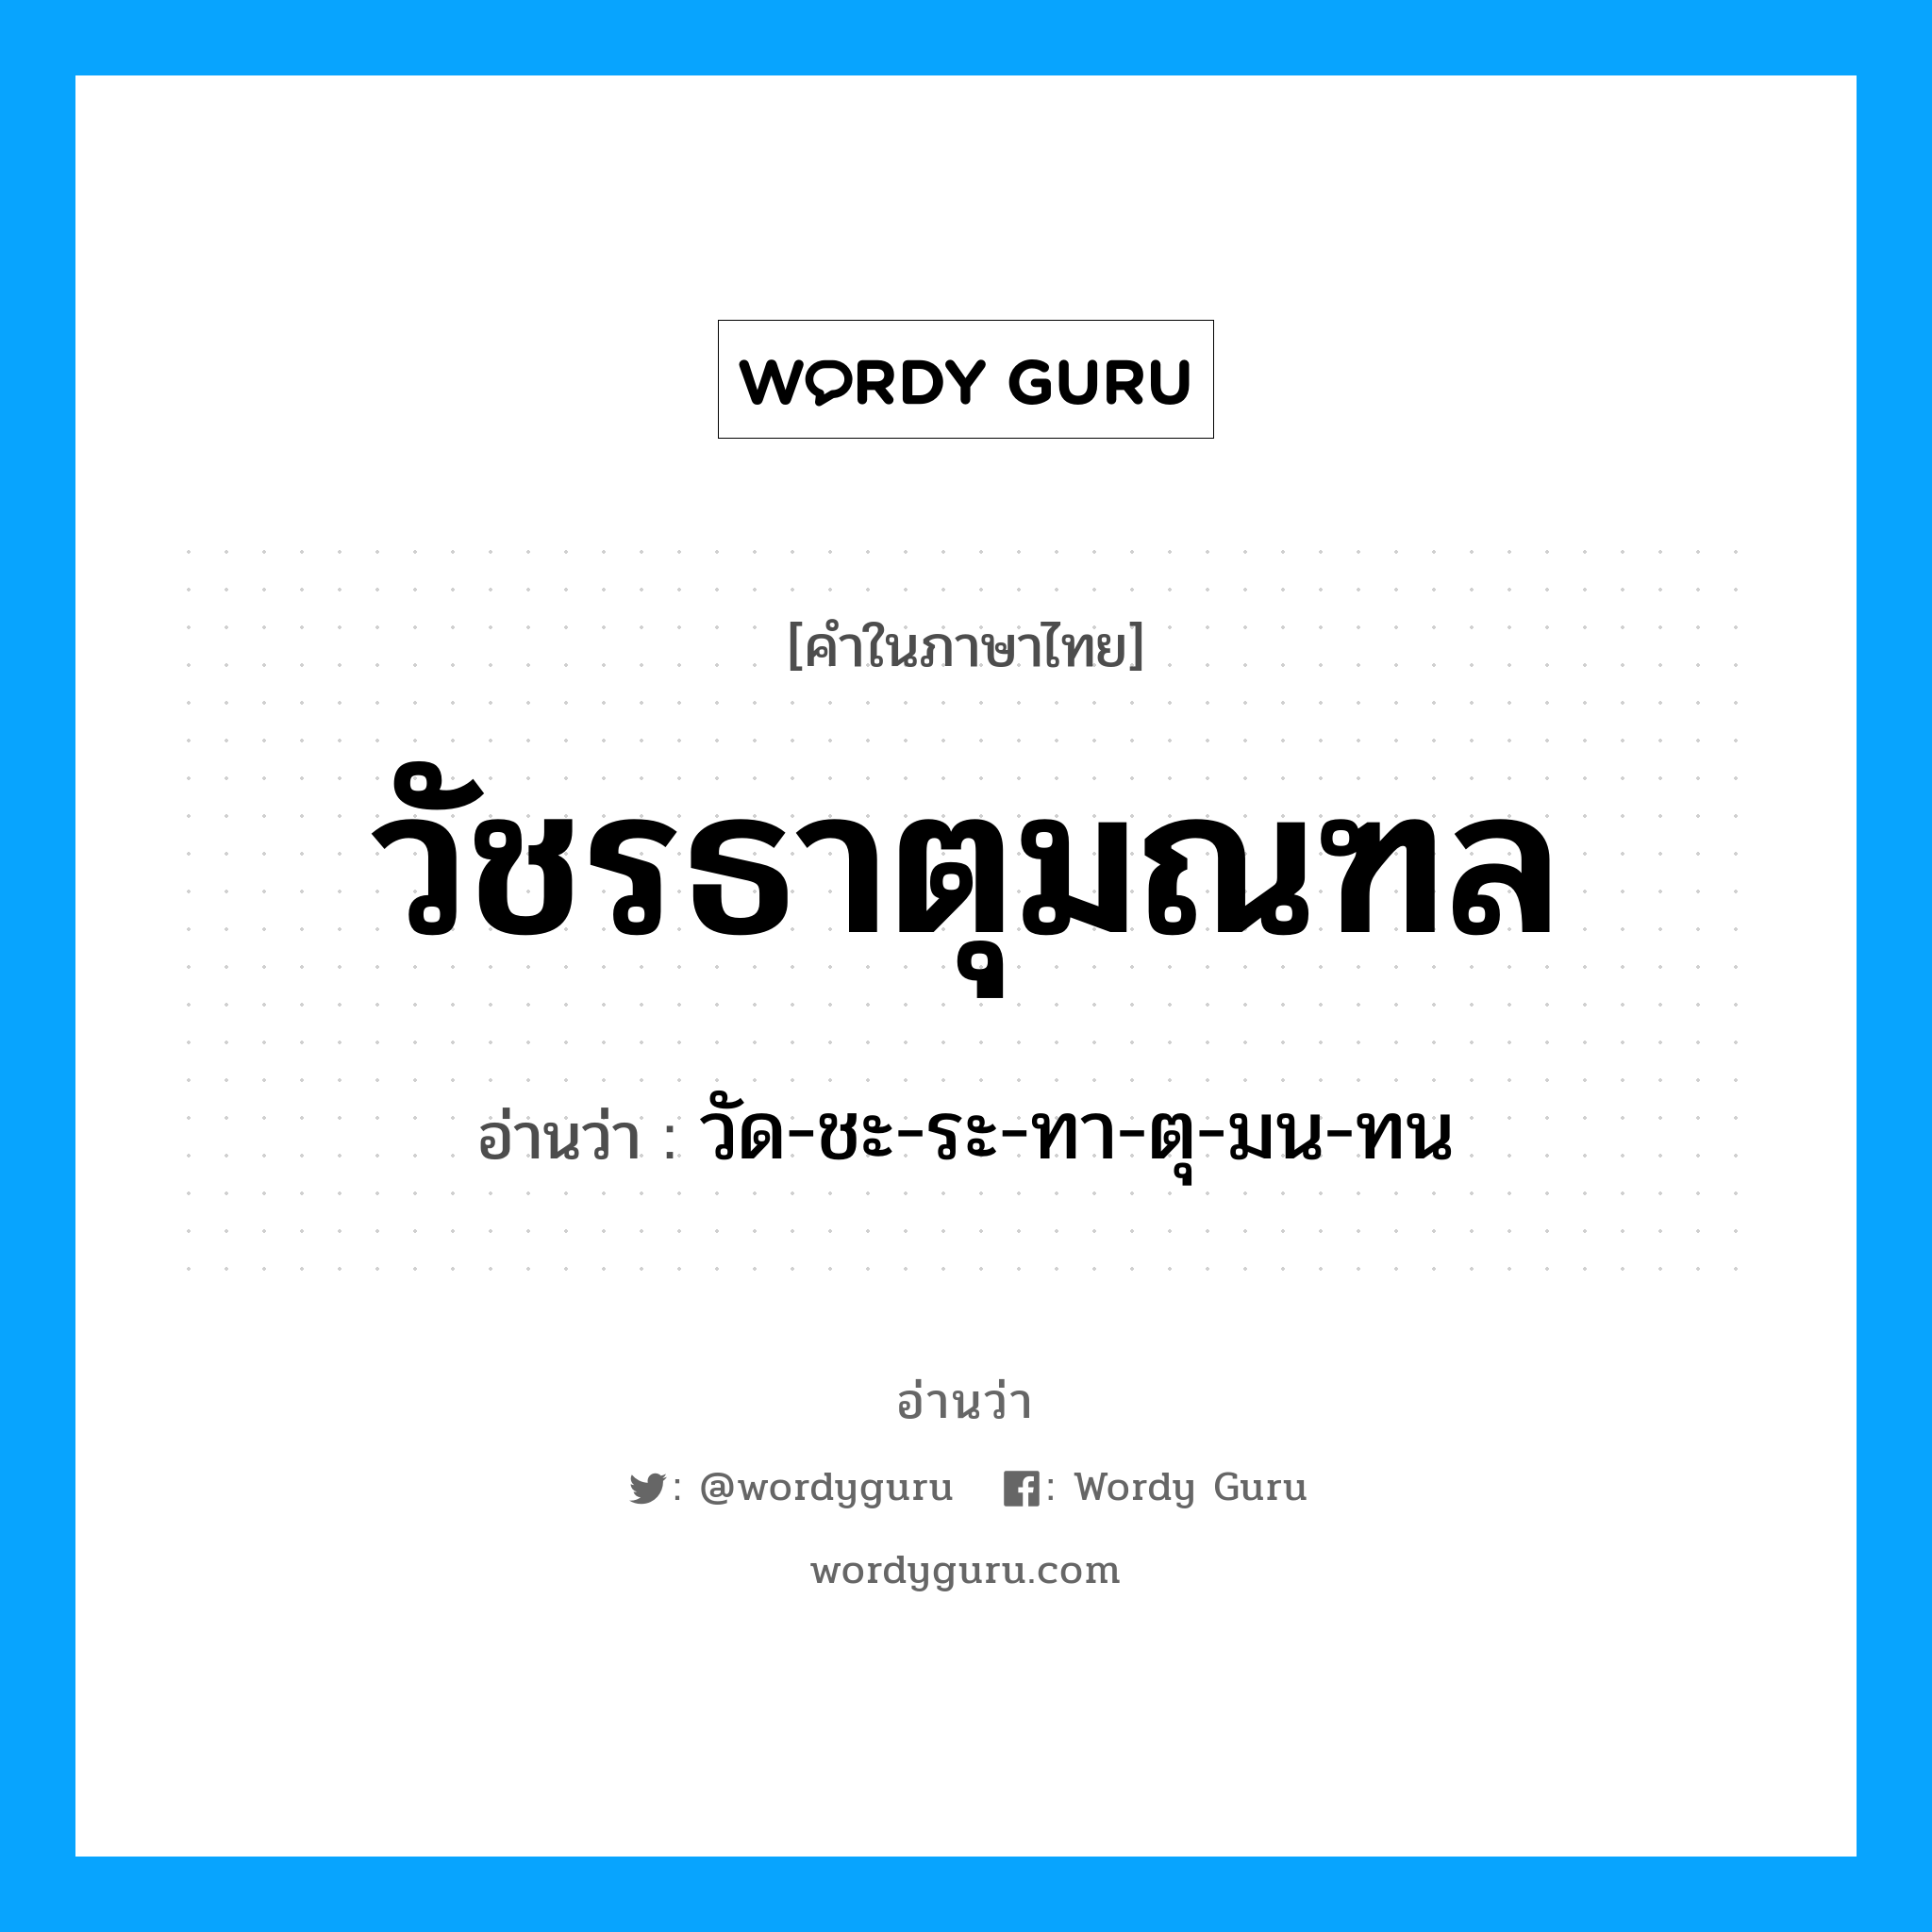 วัด-ชะ-ระ-ทา-ตุ-มน-ทน เป็นคำอ่านของคำไหน?, คำในภาษาไทย วัด-ชะ-ระ-ทา-ตุ-มน-ทน อ่านว่า วัชรธาตุมณฑล